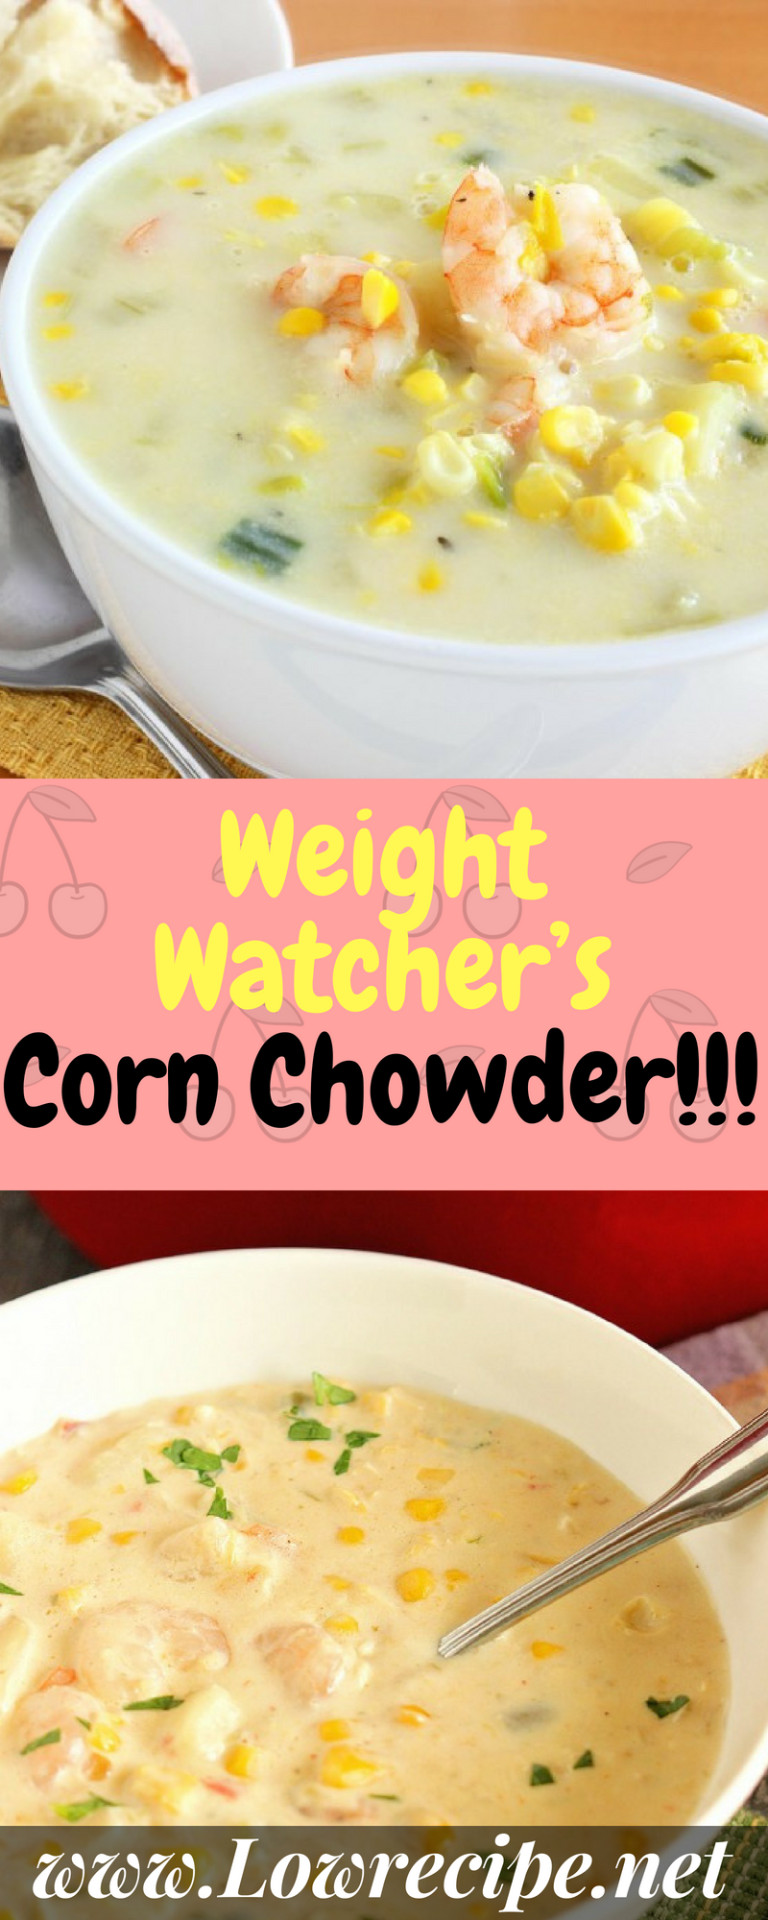 Weight Watcher Corn Chowder
 Weight Watcher’s Corn Chowder Low Recipe